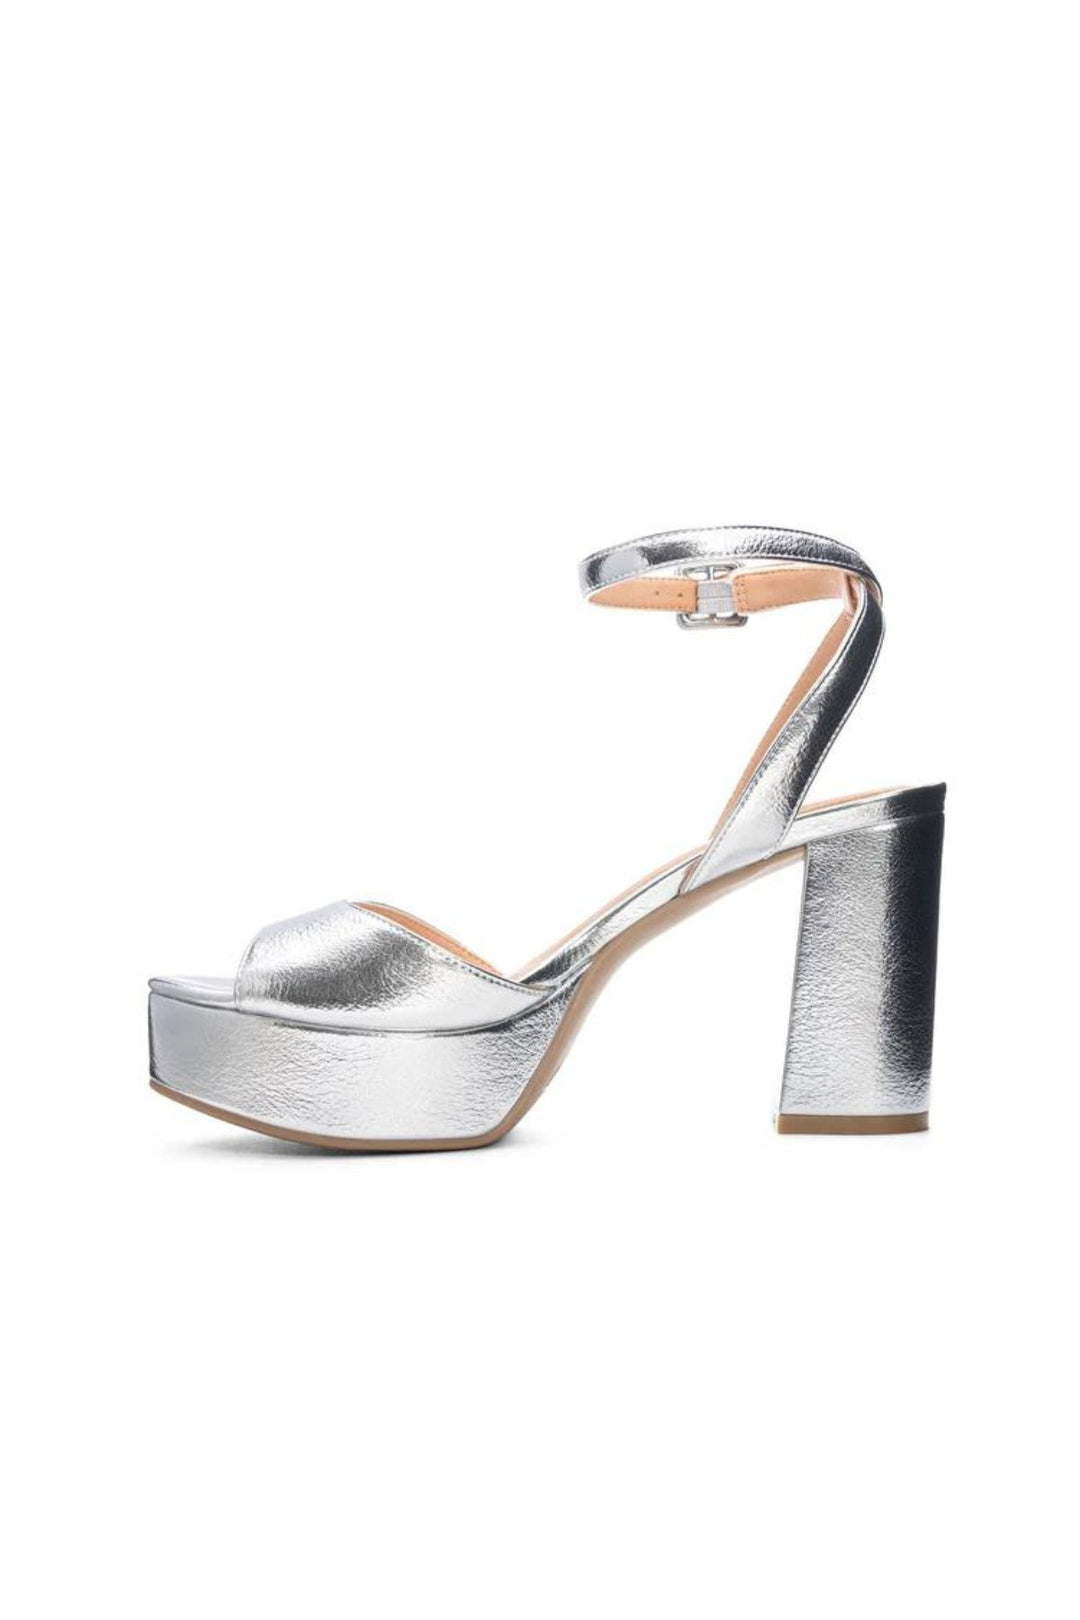 Gilded Glamour Silver Platform Sandals - JO+CO